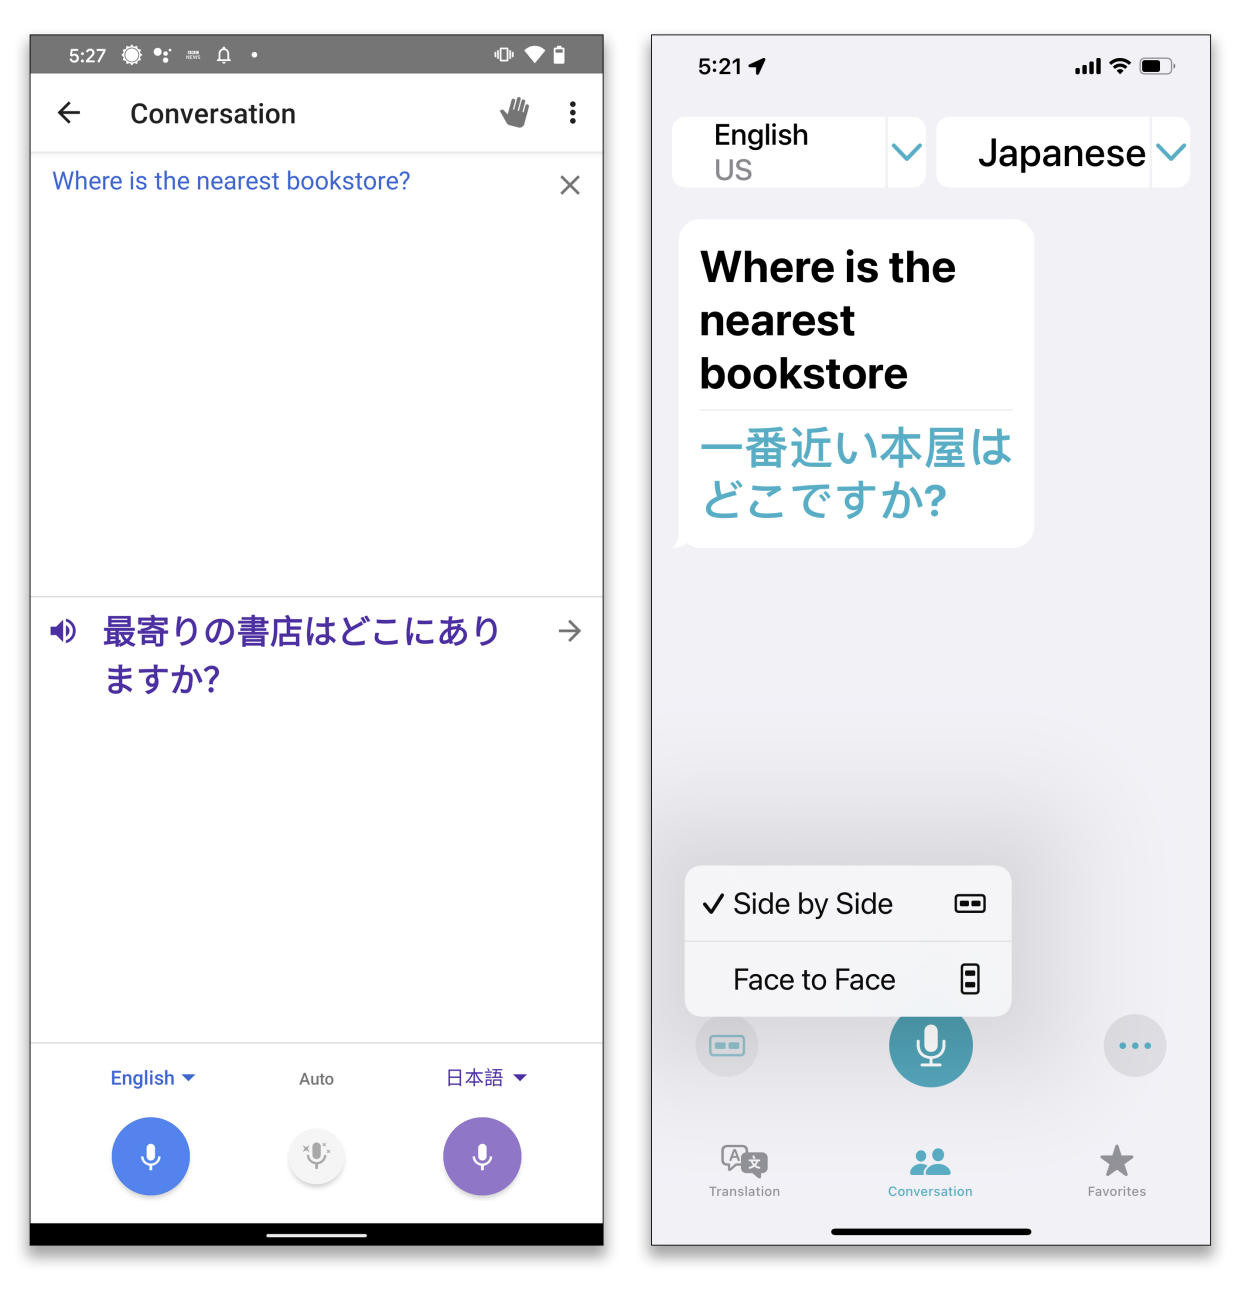 La aplicación Apple Translate ya está disponible en el iPad en iOS 15 y ofrece una pantalla más grande para las conversaciones bidireccionales. (Apple vía The New York Times)